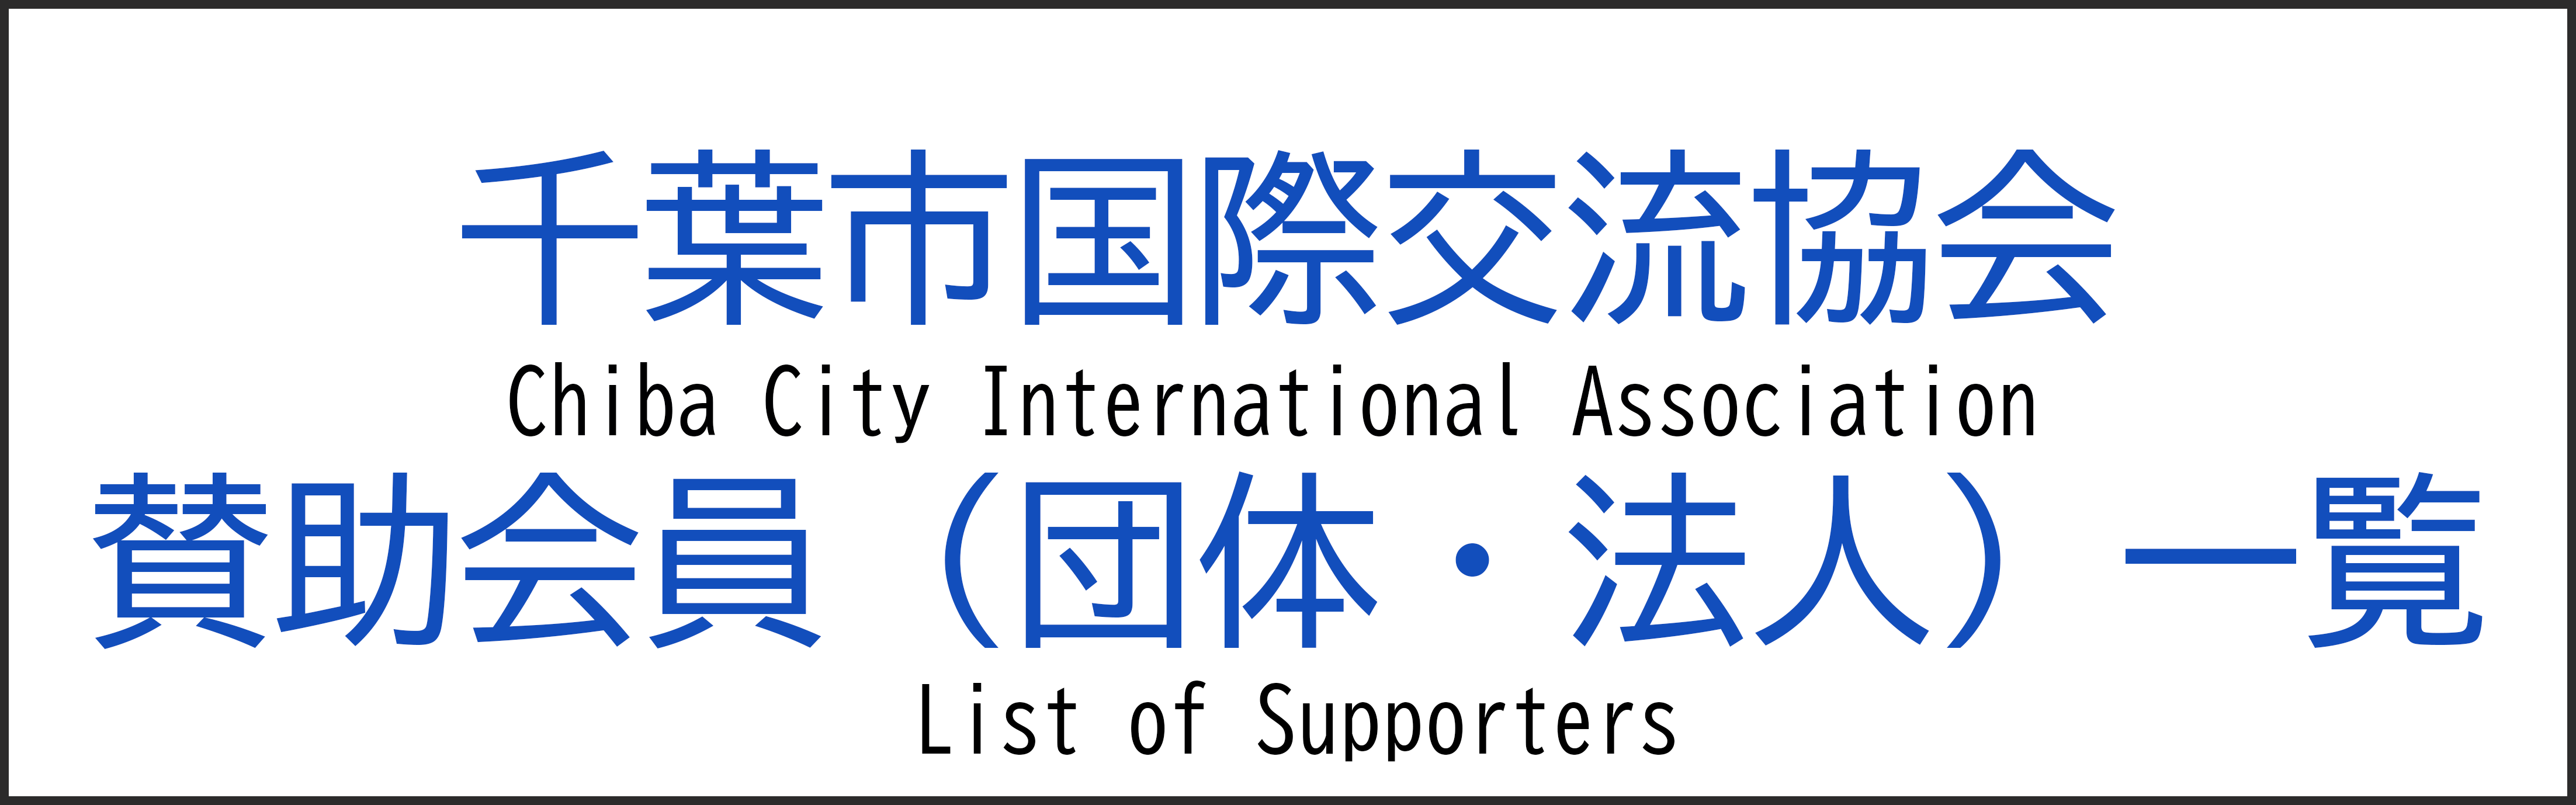 Popis članova koji podržavaju (organizacije/korporacije)